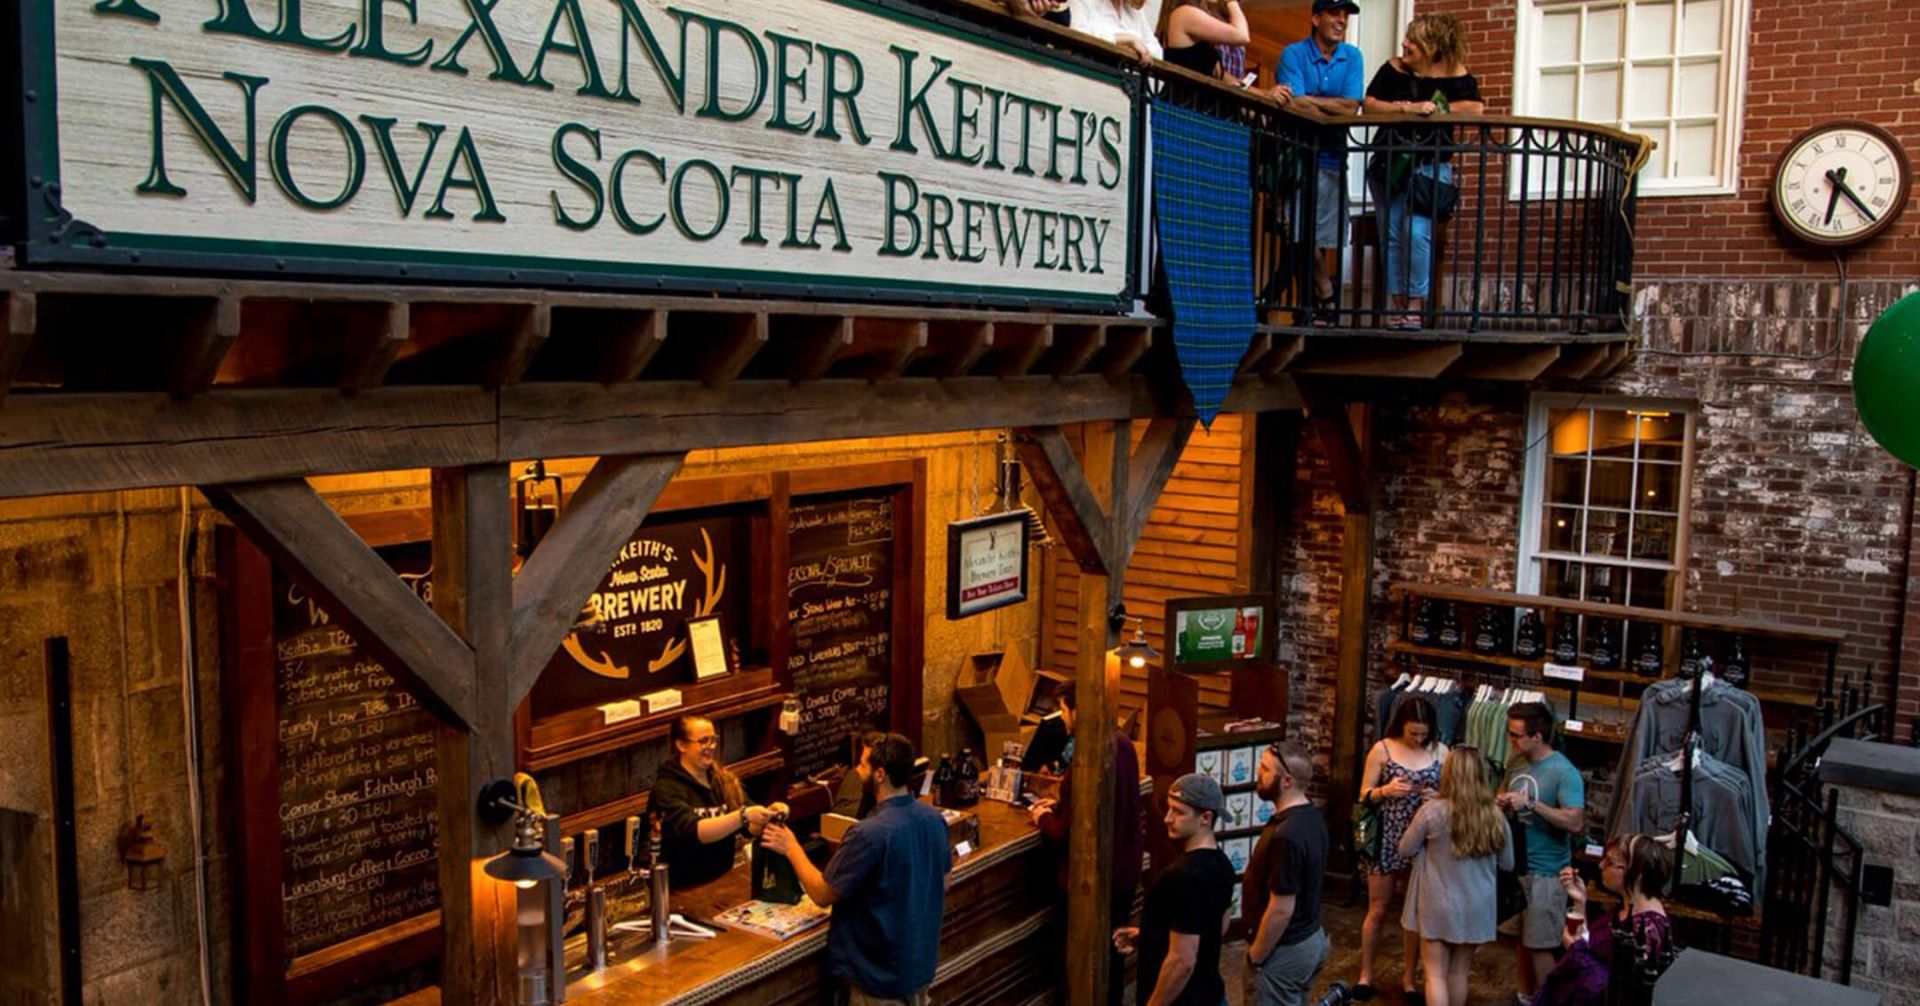 alexander keith's brewery tour nova scotia